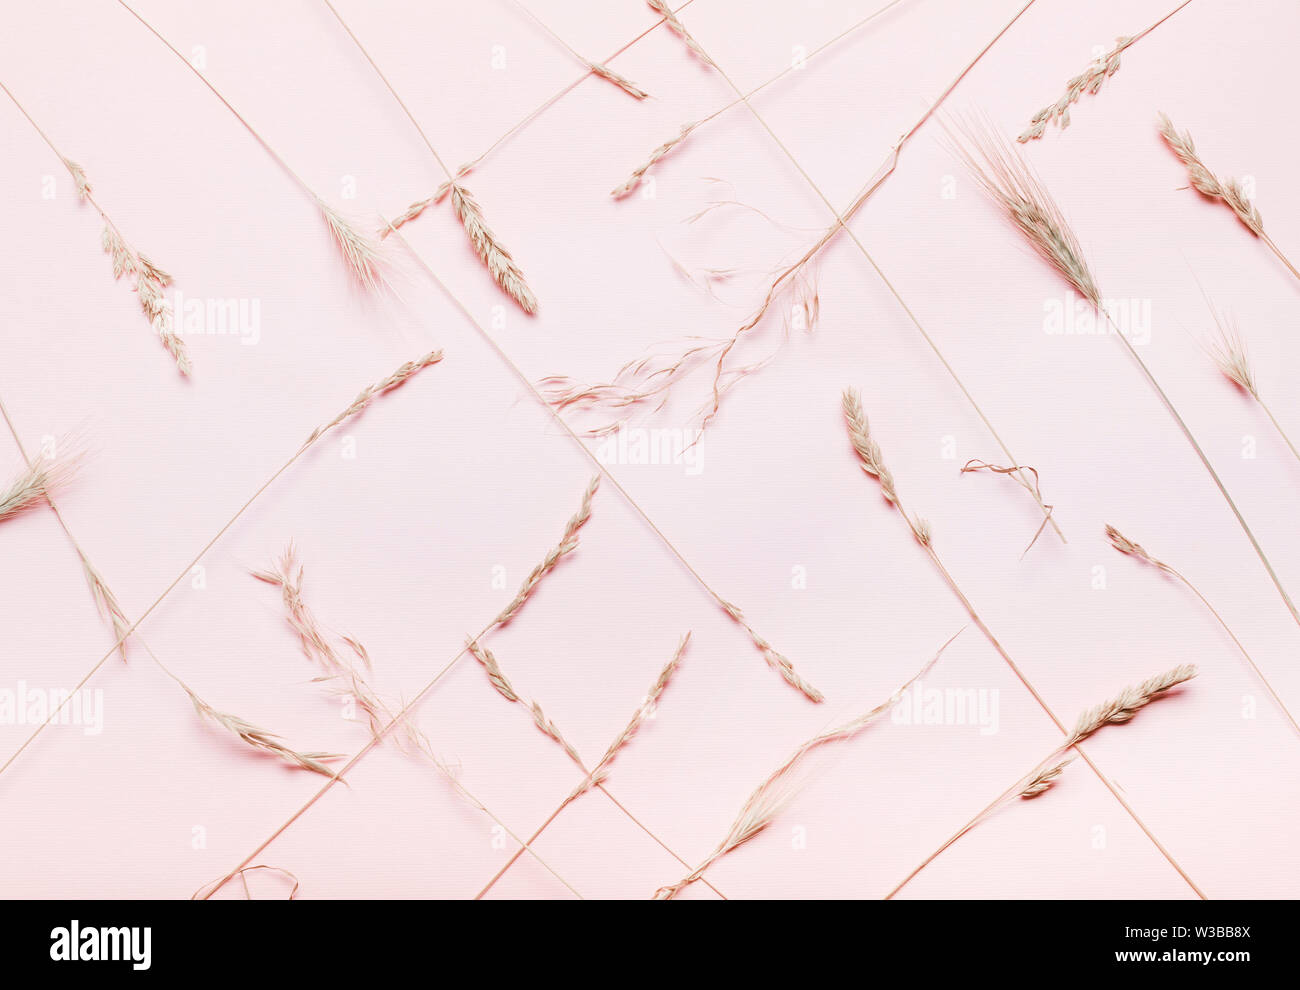 Composition des épillets à sec, l'herbe sur un fond rose, corail. Vue de dessus, à plat. Concept minimaliste Automne Été Banque D'Images